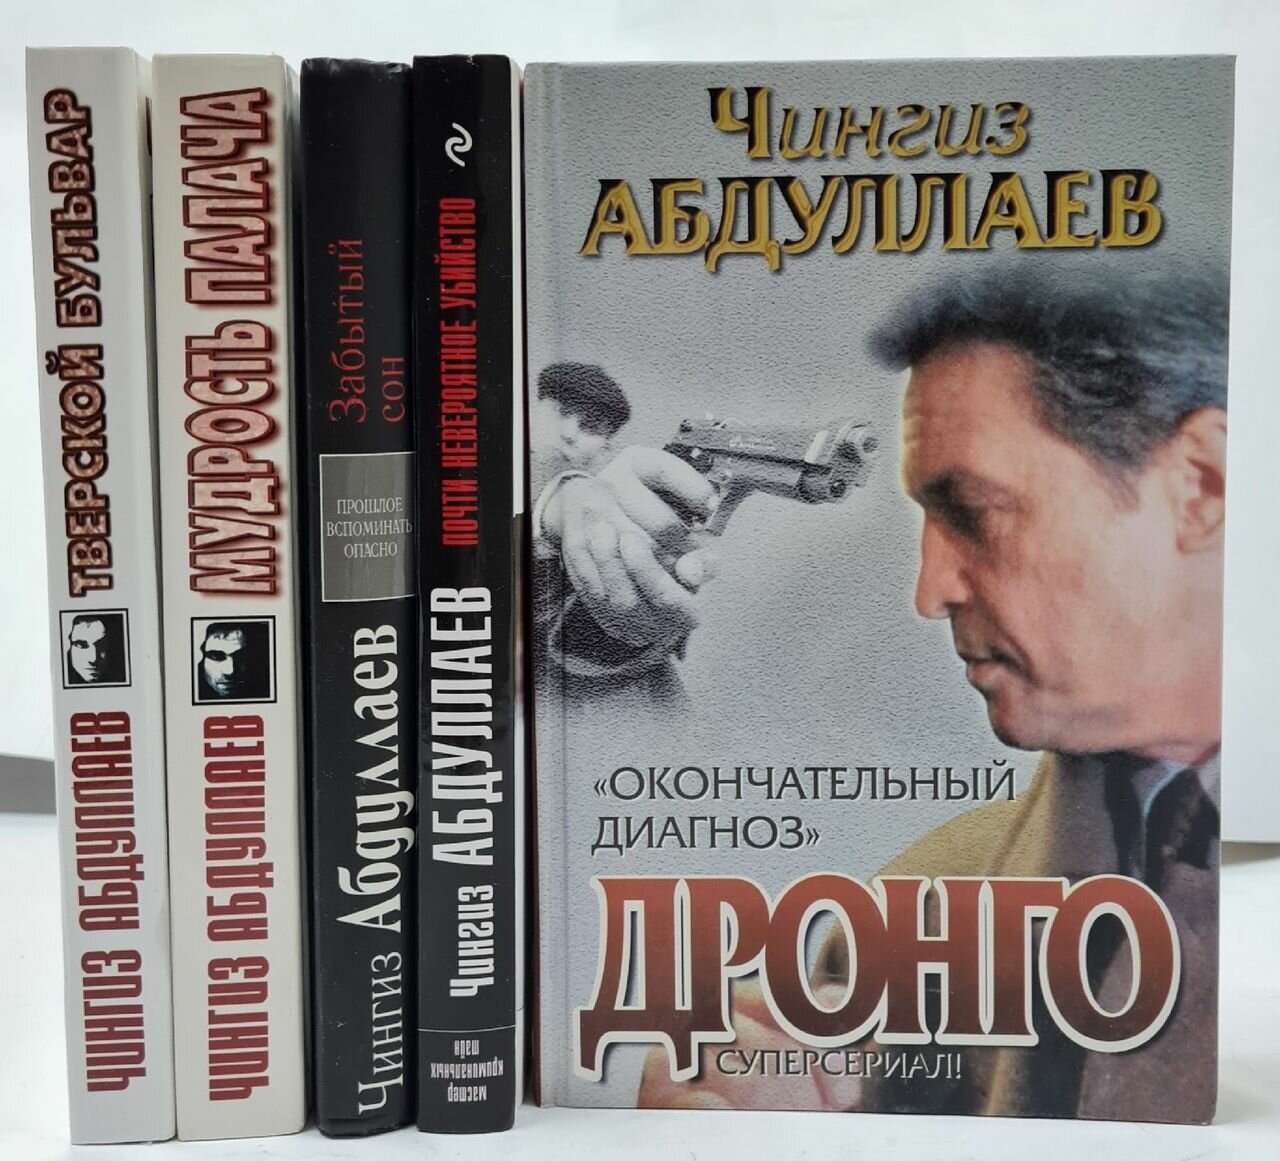 Чингиз Абдуллаев (Комплект из 5 книг)